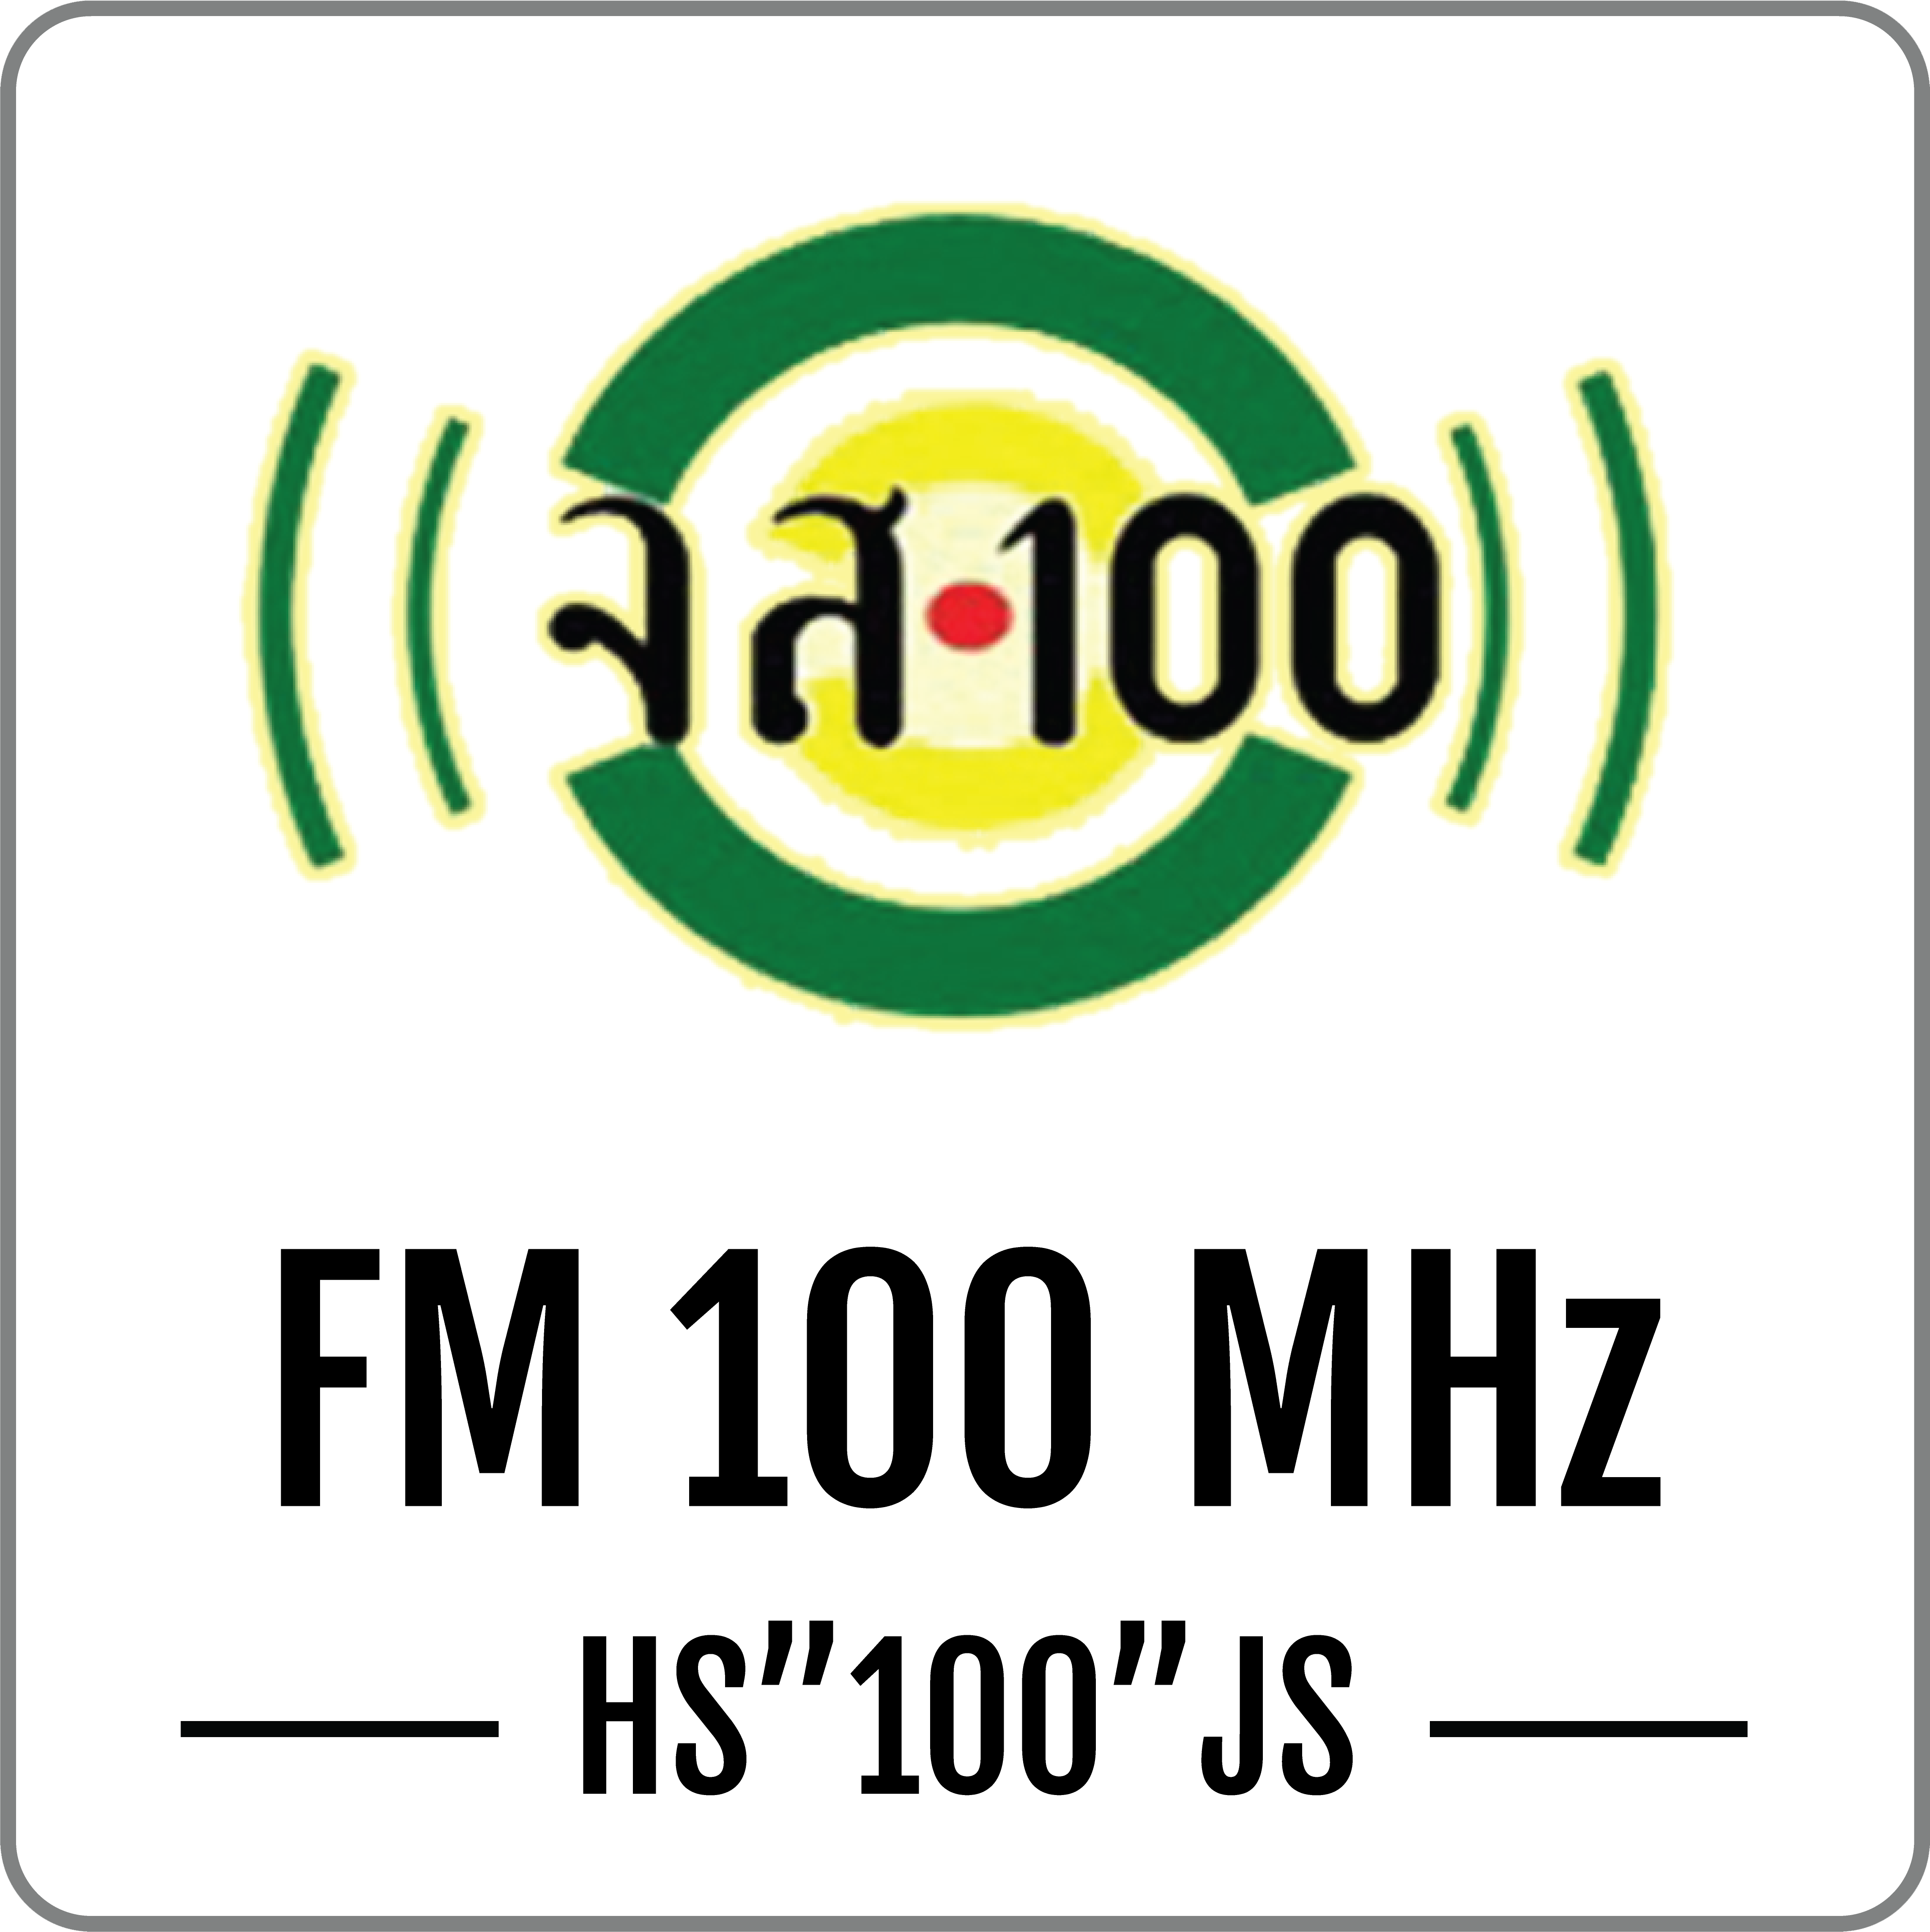 สถานีวิทยุจเรทหารสื่อสาร FM 100